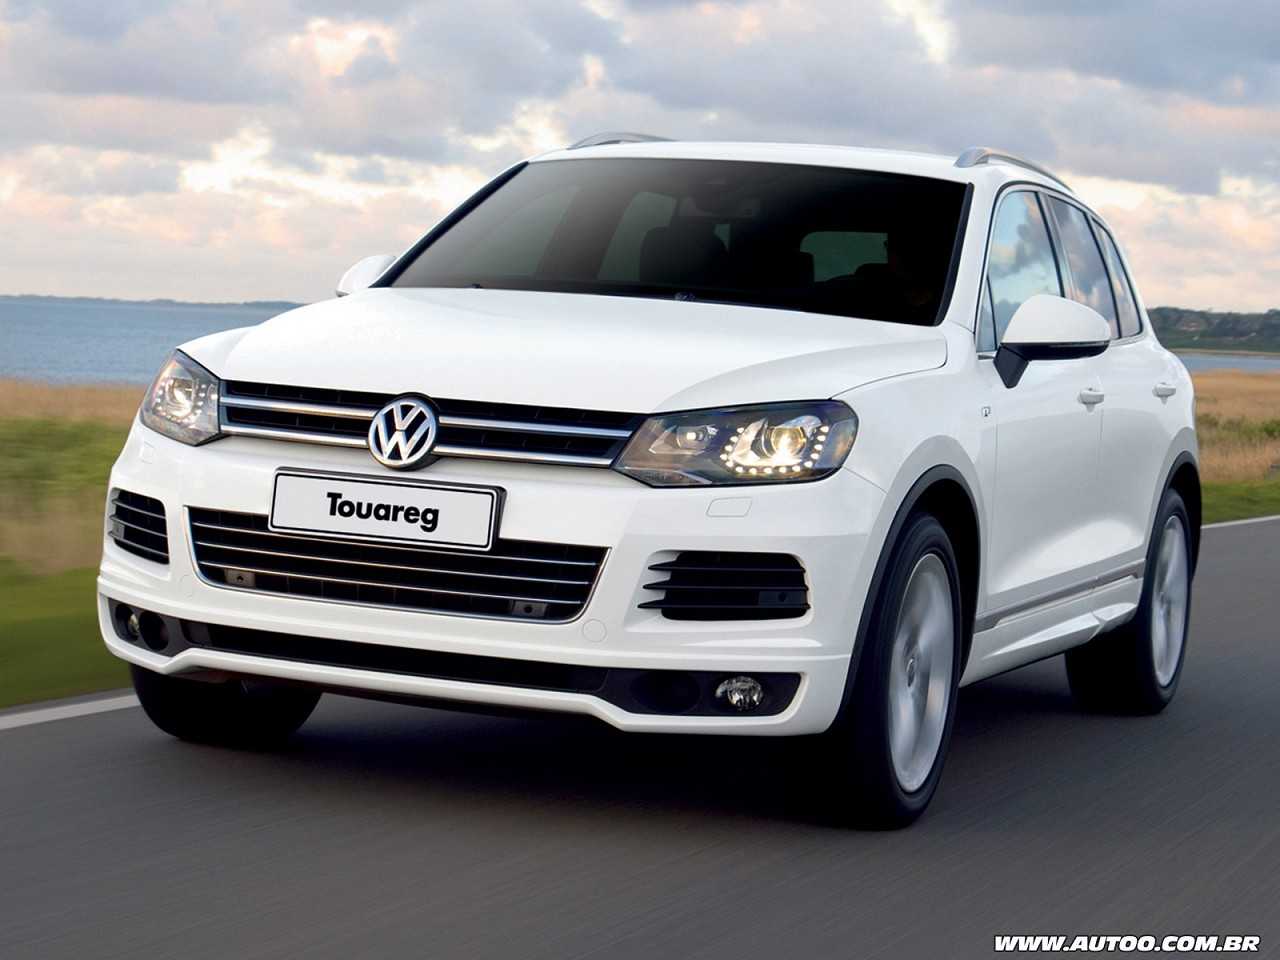 VolkswagenTouareg 2013 - ngulo frontal